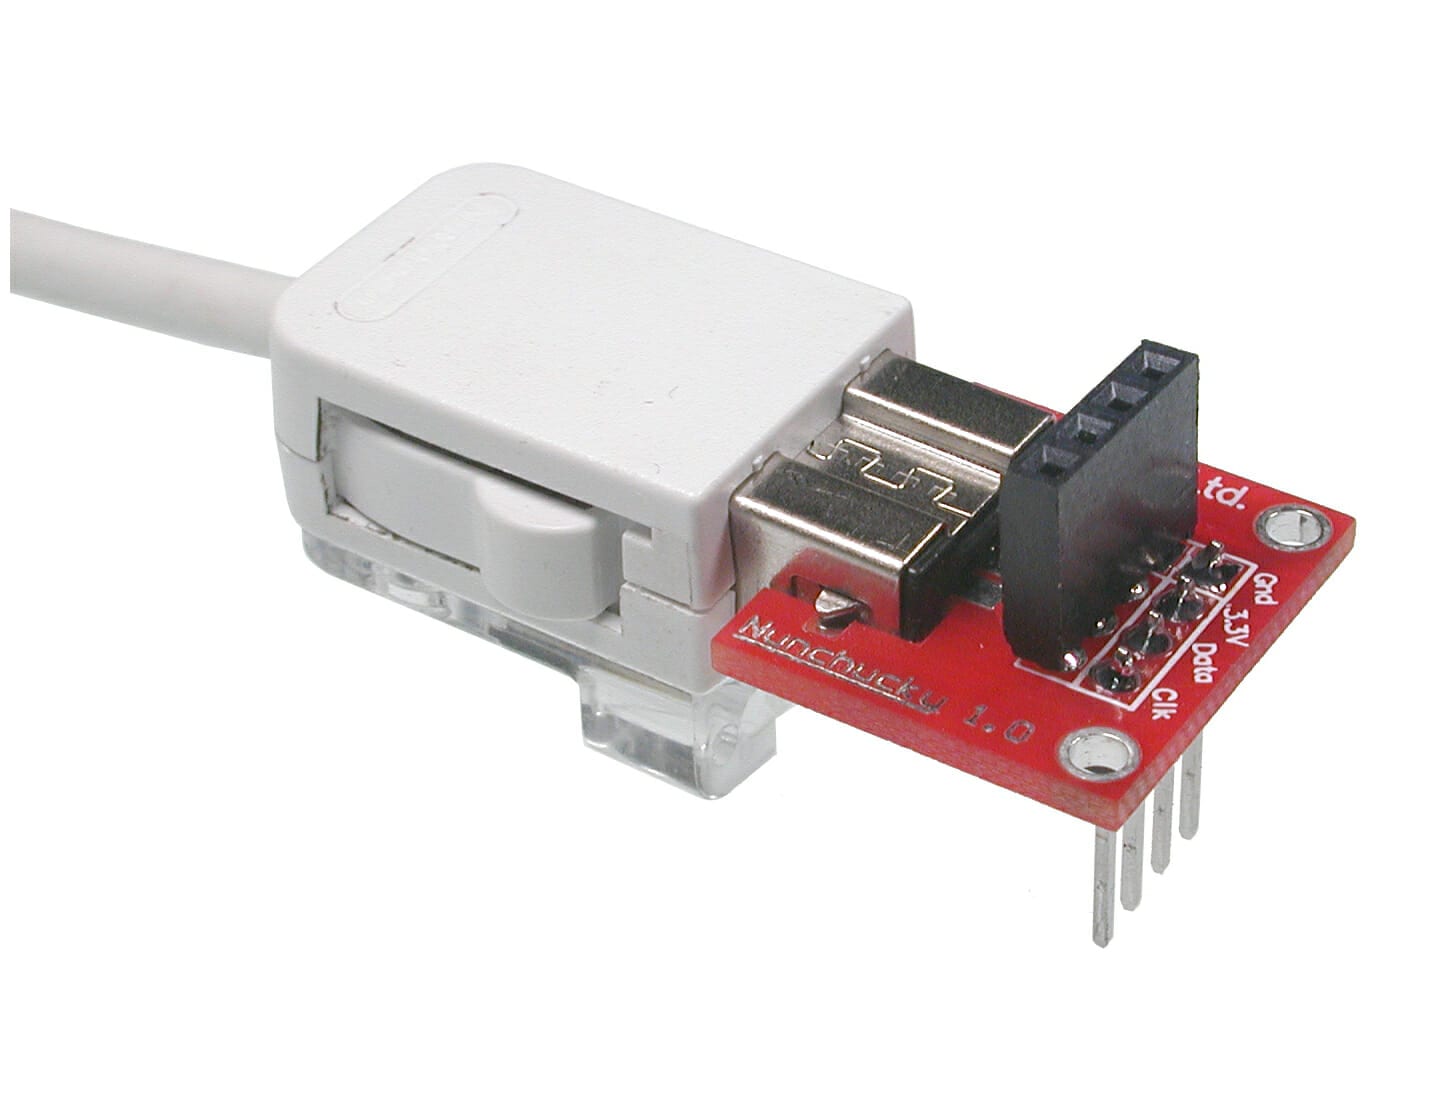 Geestig Korting Bermad NunChucky Wii Nunchuck I2C Breakout Adapter - Solarbotics Ltd.